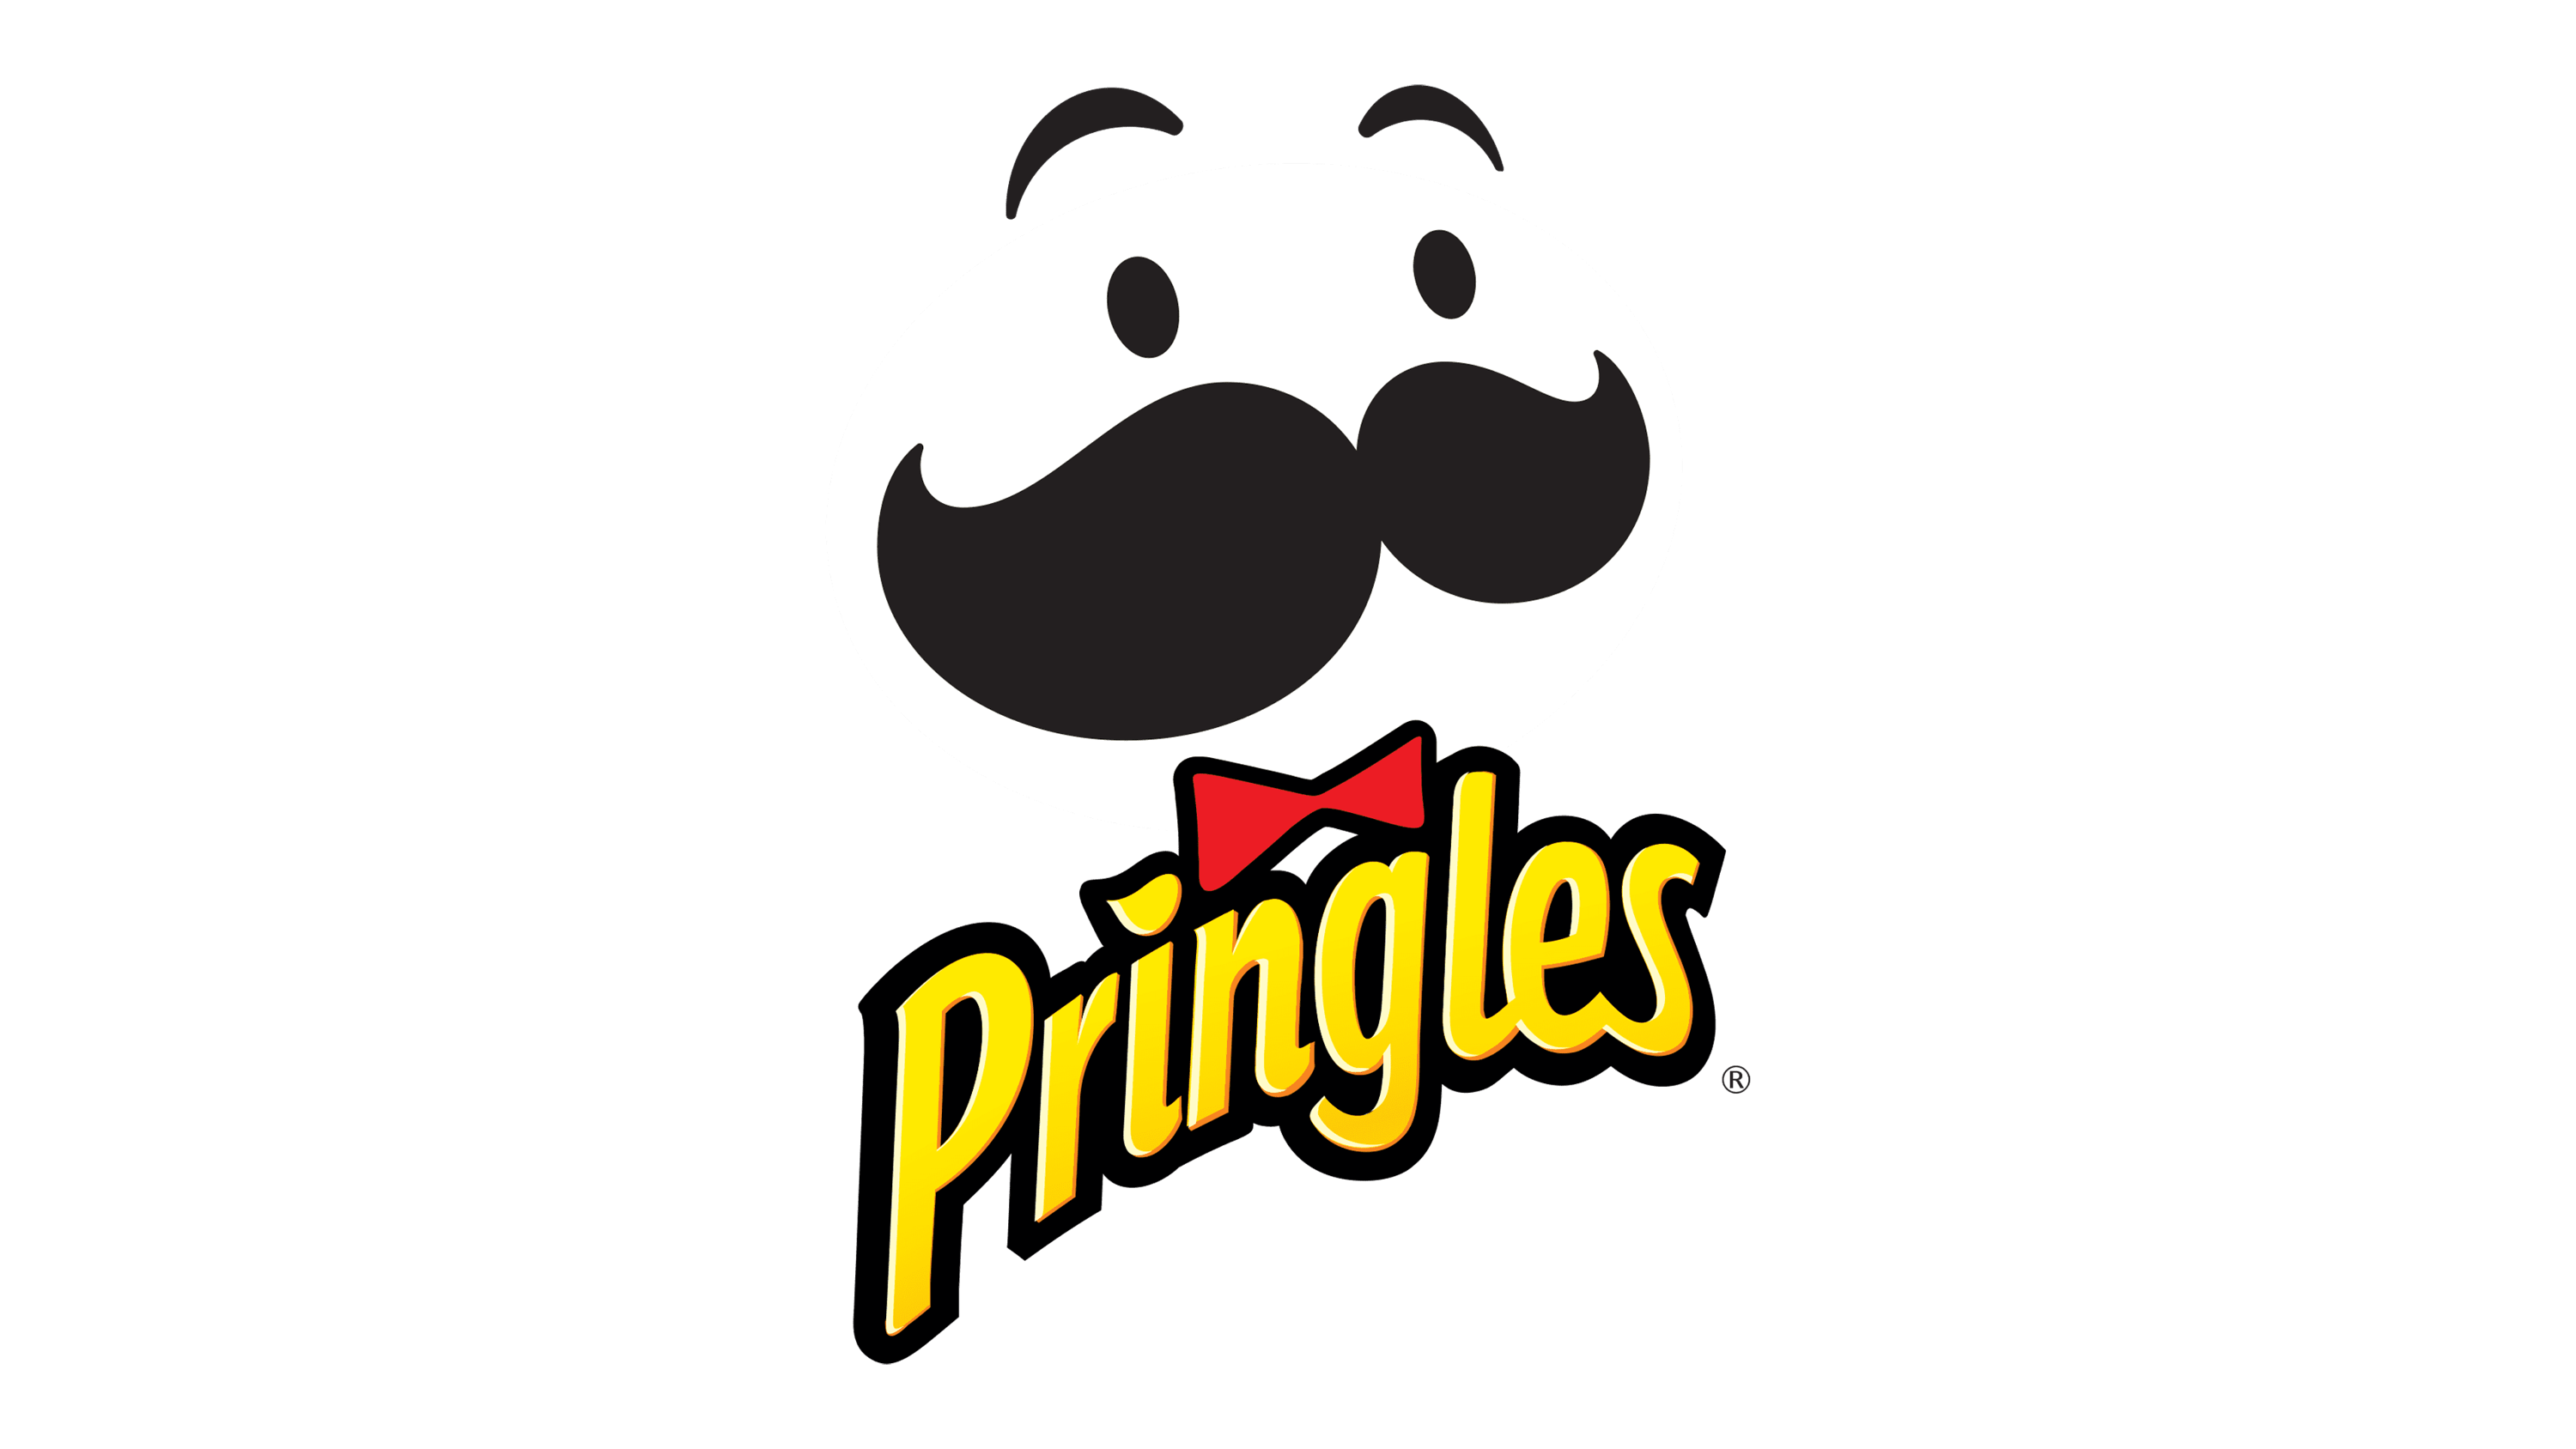 Pringles press release example - Pringles